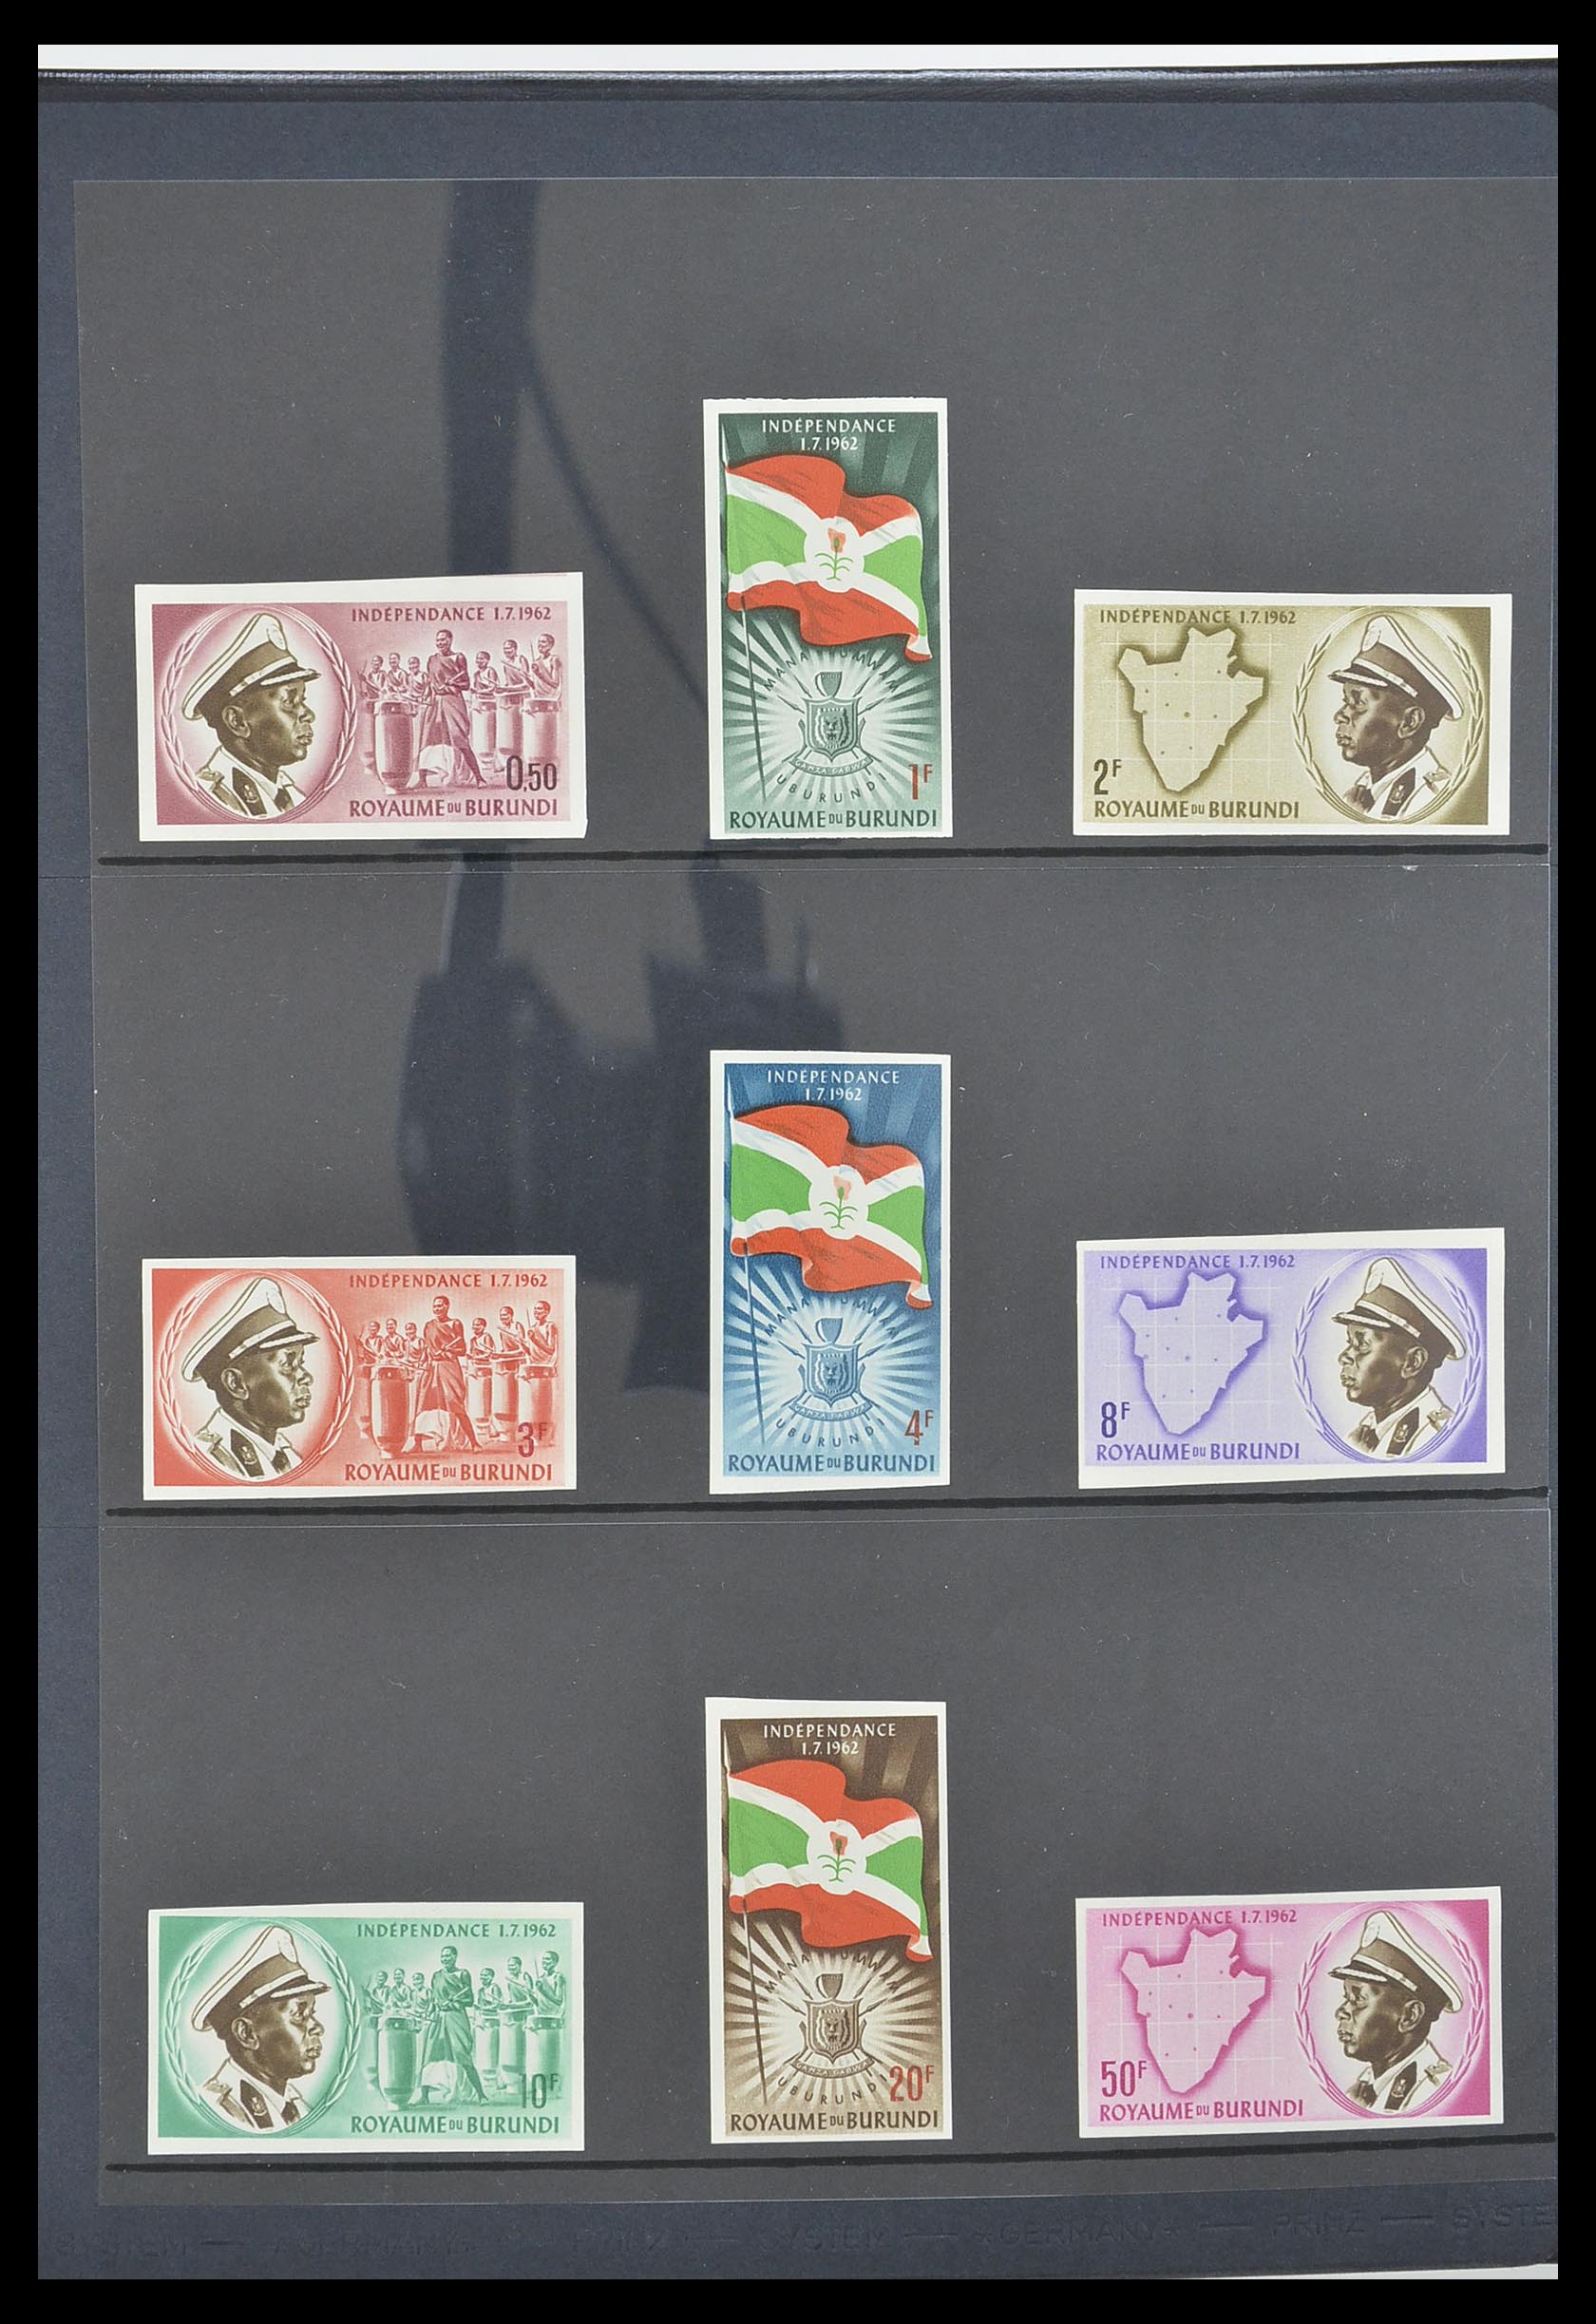 33764 004 - Stamp collection 33764 Burundi 1962-2004.